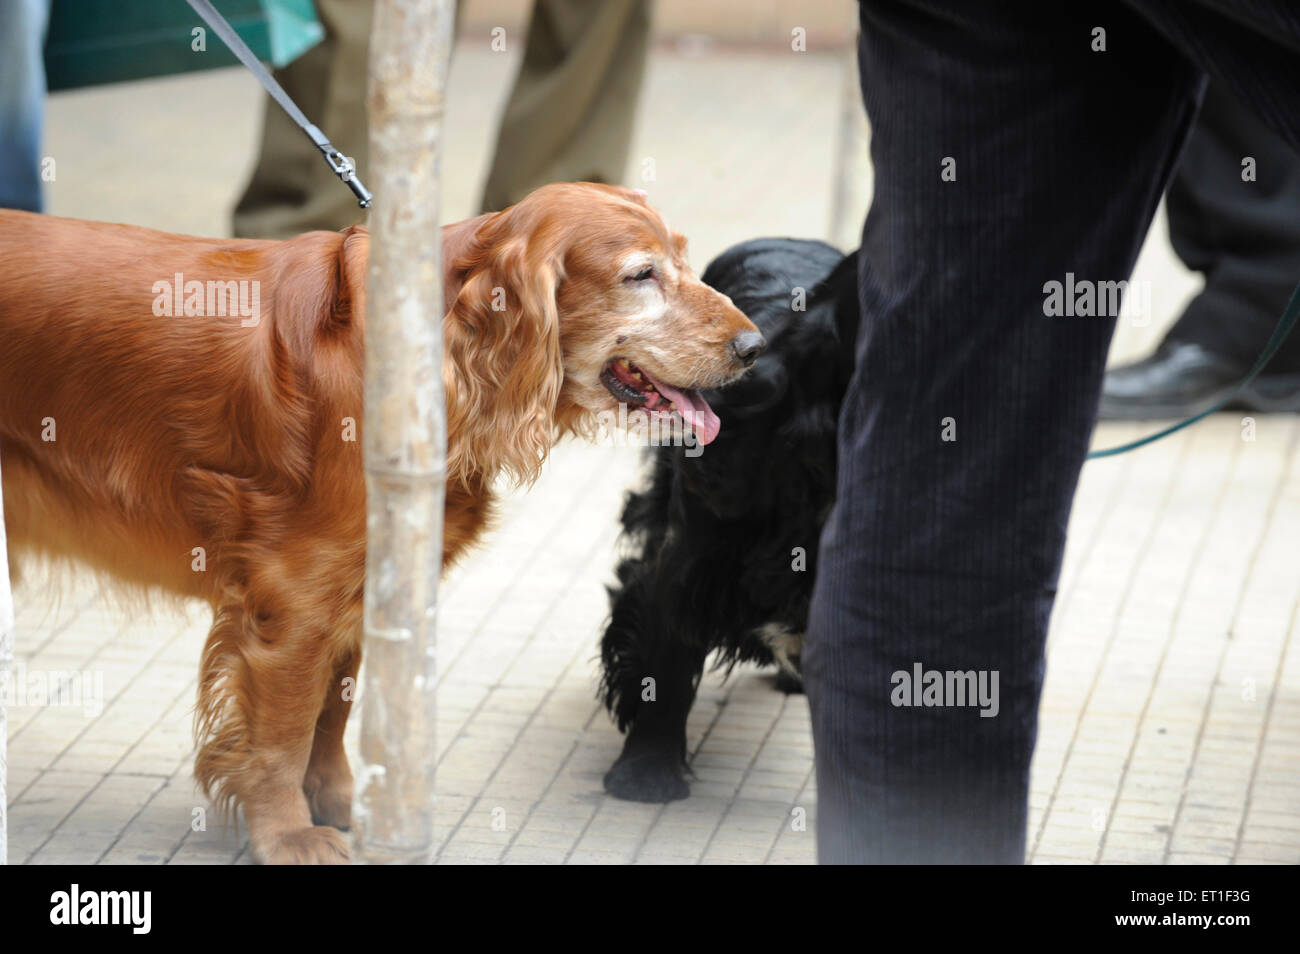 dog escaped from Oberoi Trident Hotel, 2008 Mumbai terrorist attack, Bombay, Mumbai, Maharashtra, India Stock Photo